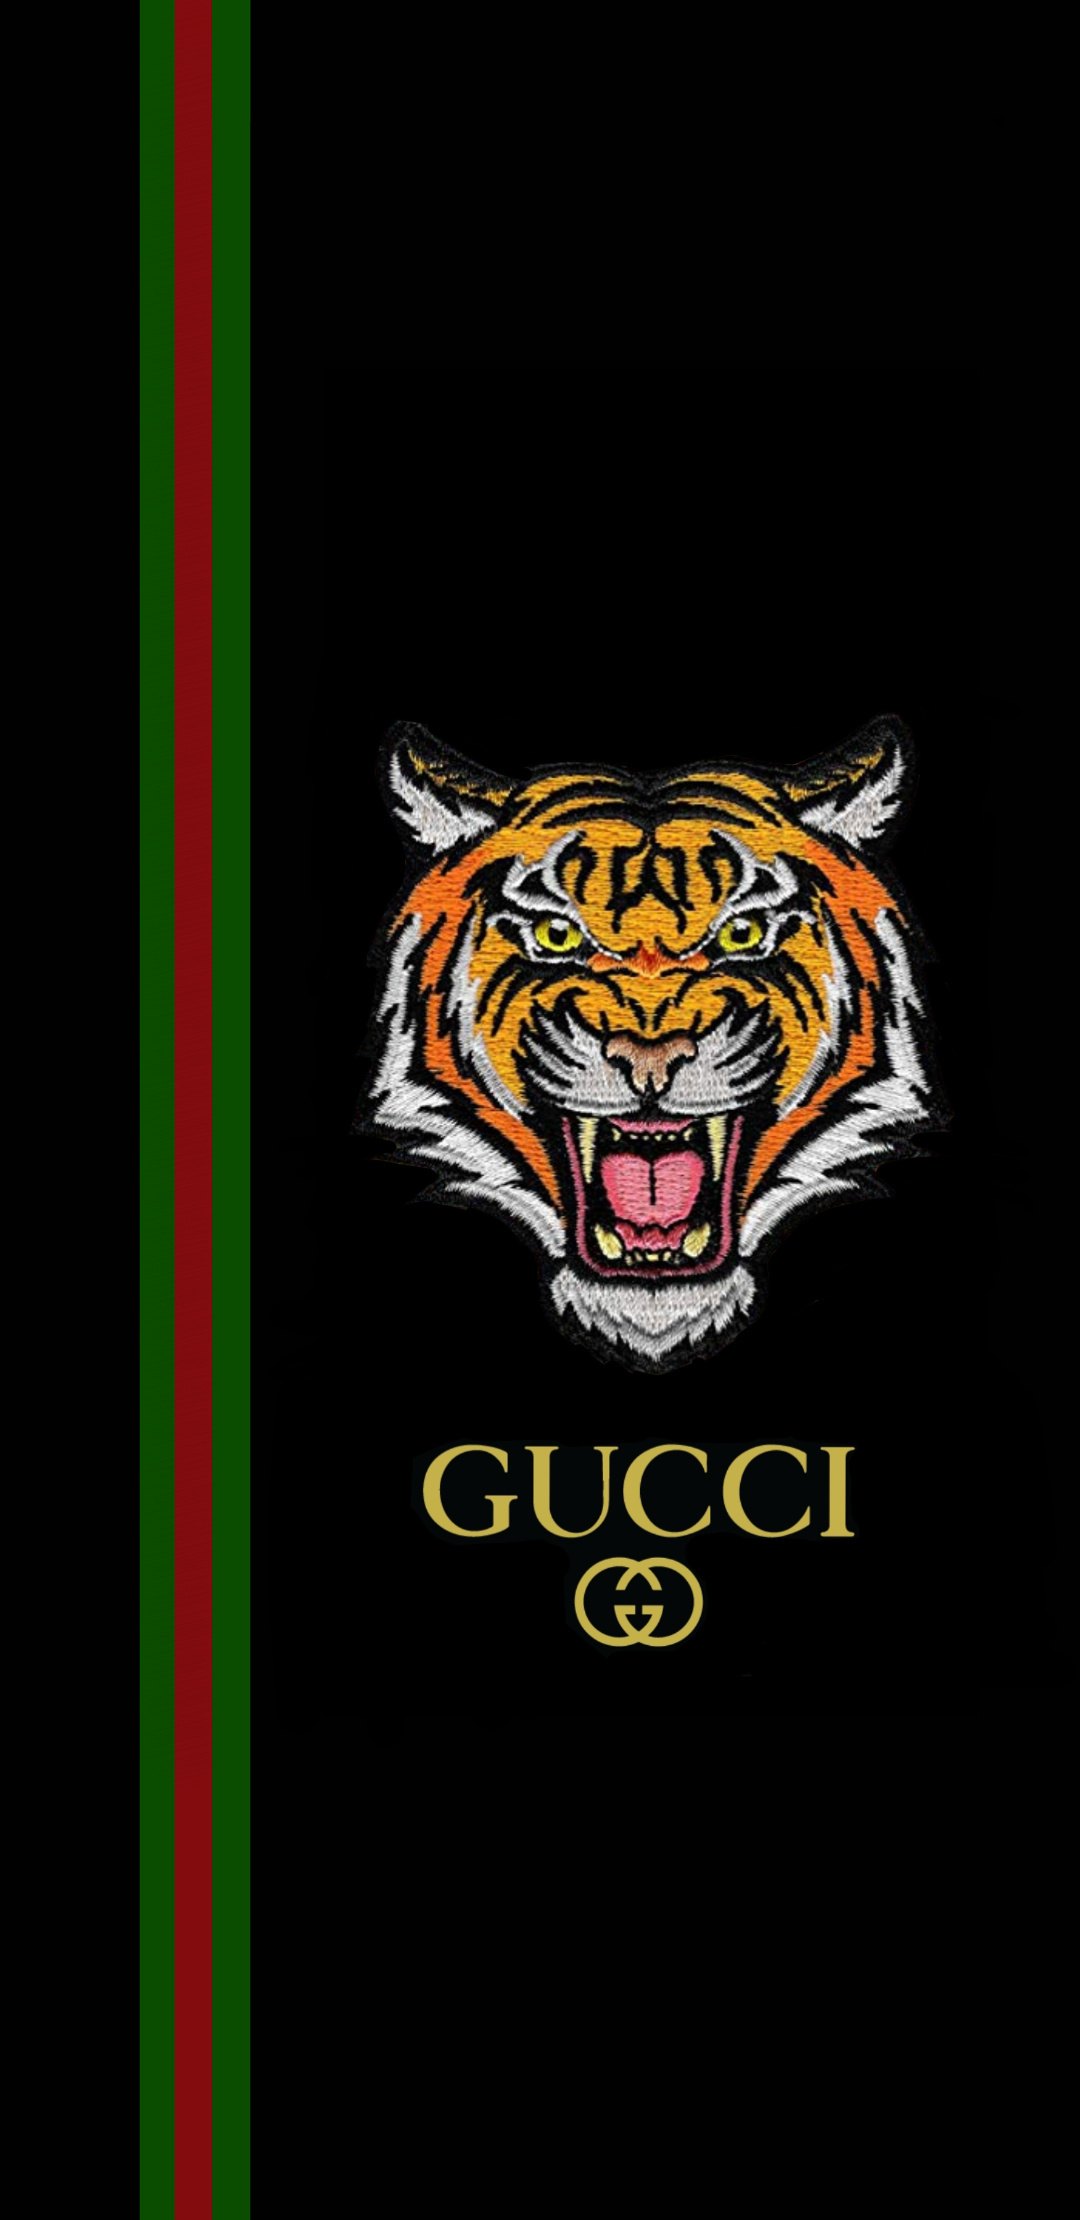 Hình nền Gucci đẹp sành điệu dành cho điện thoại cực chất